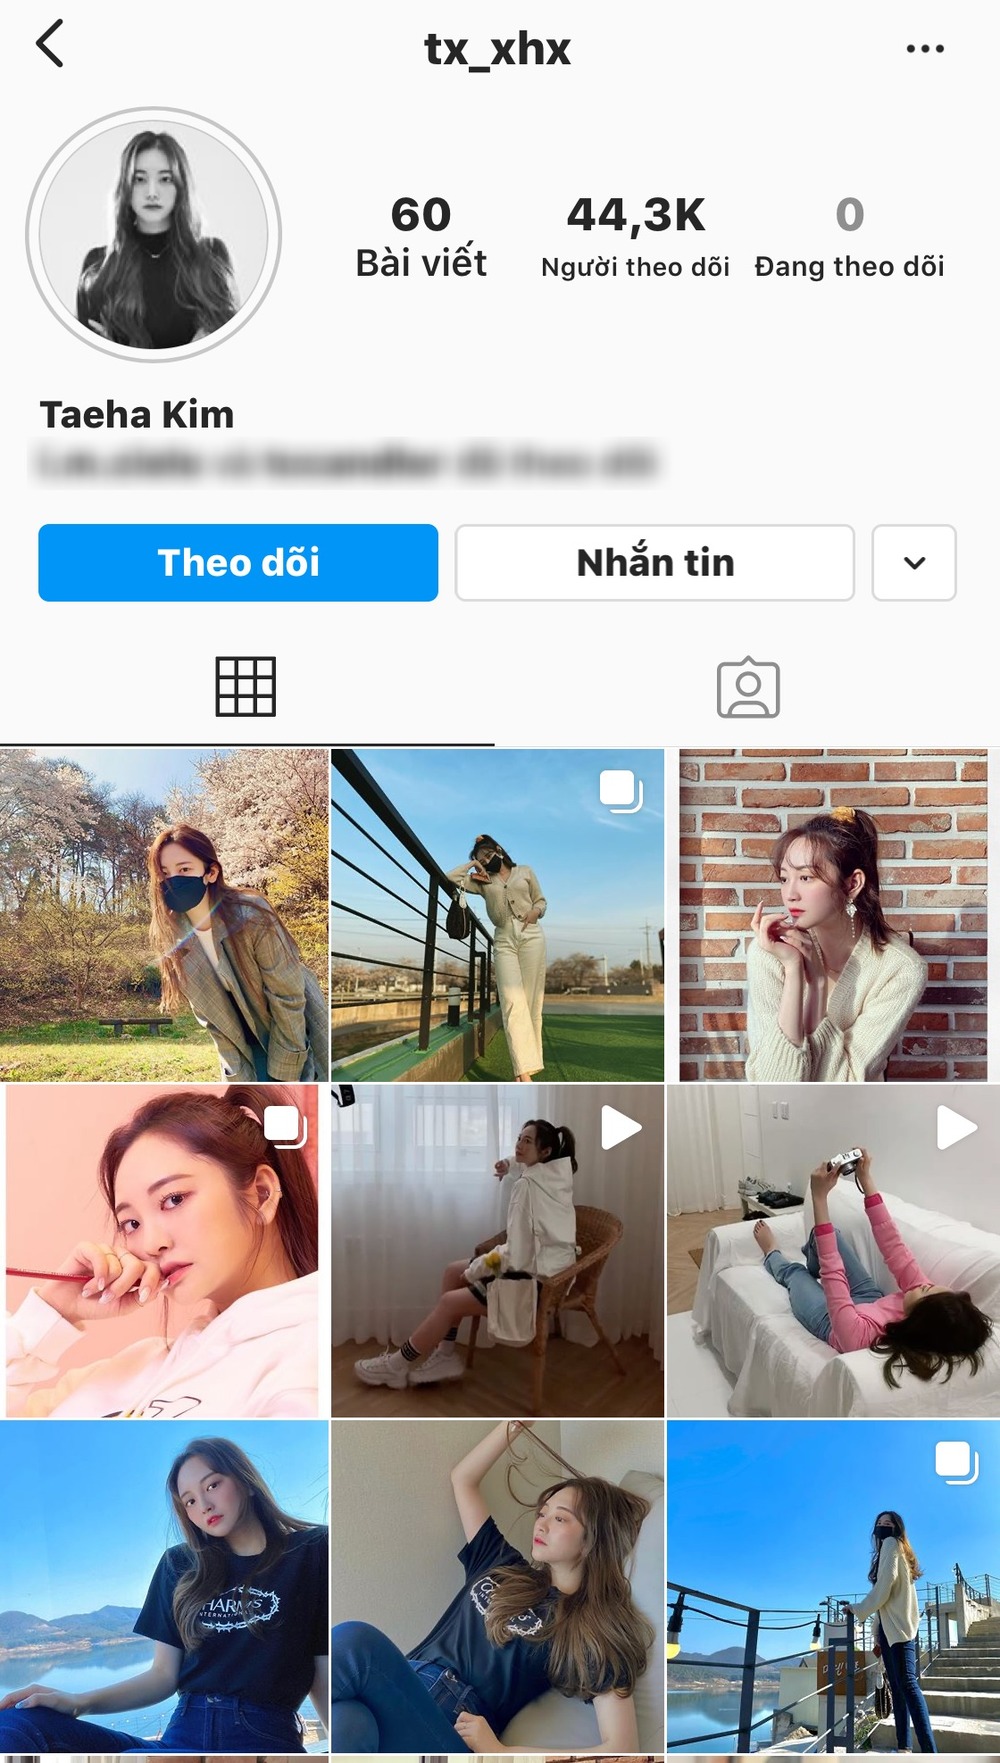  
Trang cá nhân của Taeha không có động thái mới trong ngày sinh nhật Nancy (Ảnh: chụp màn hình).